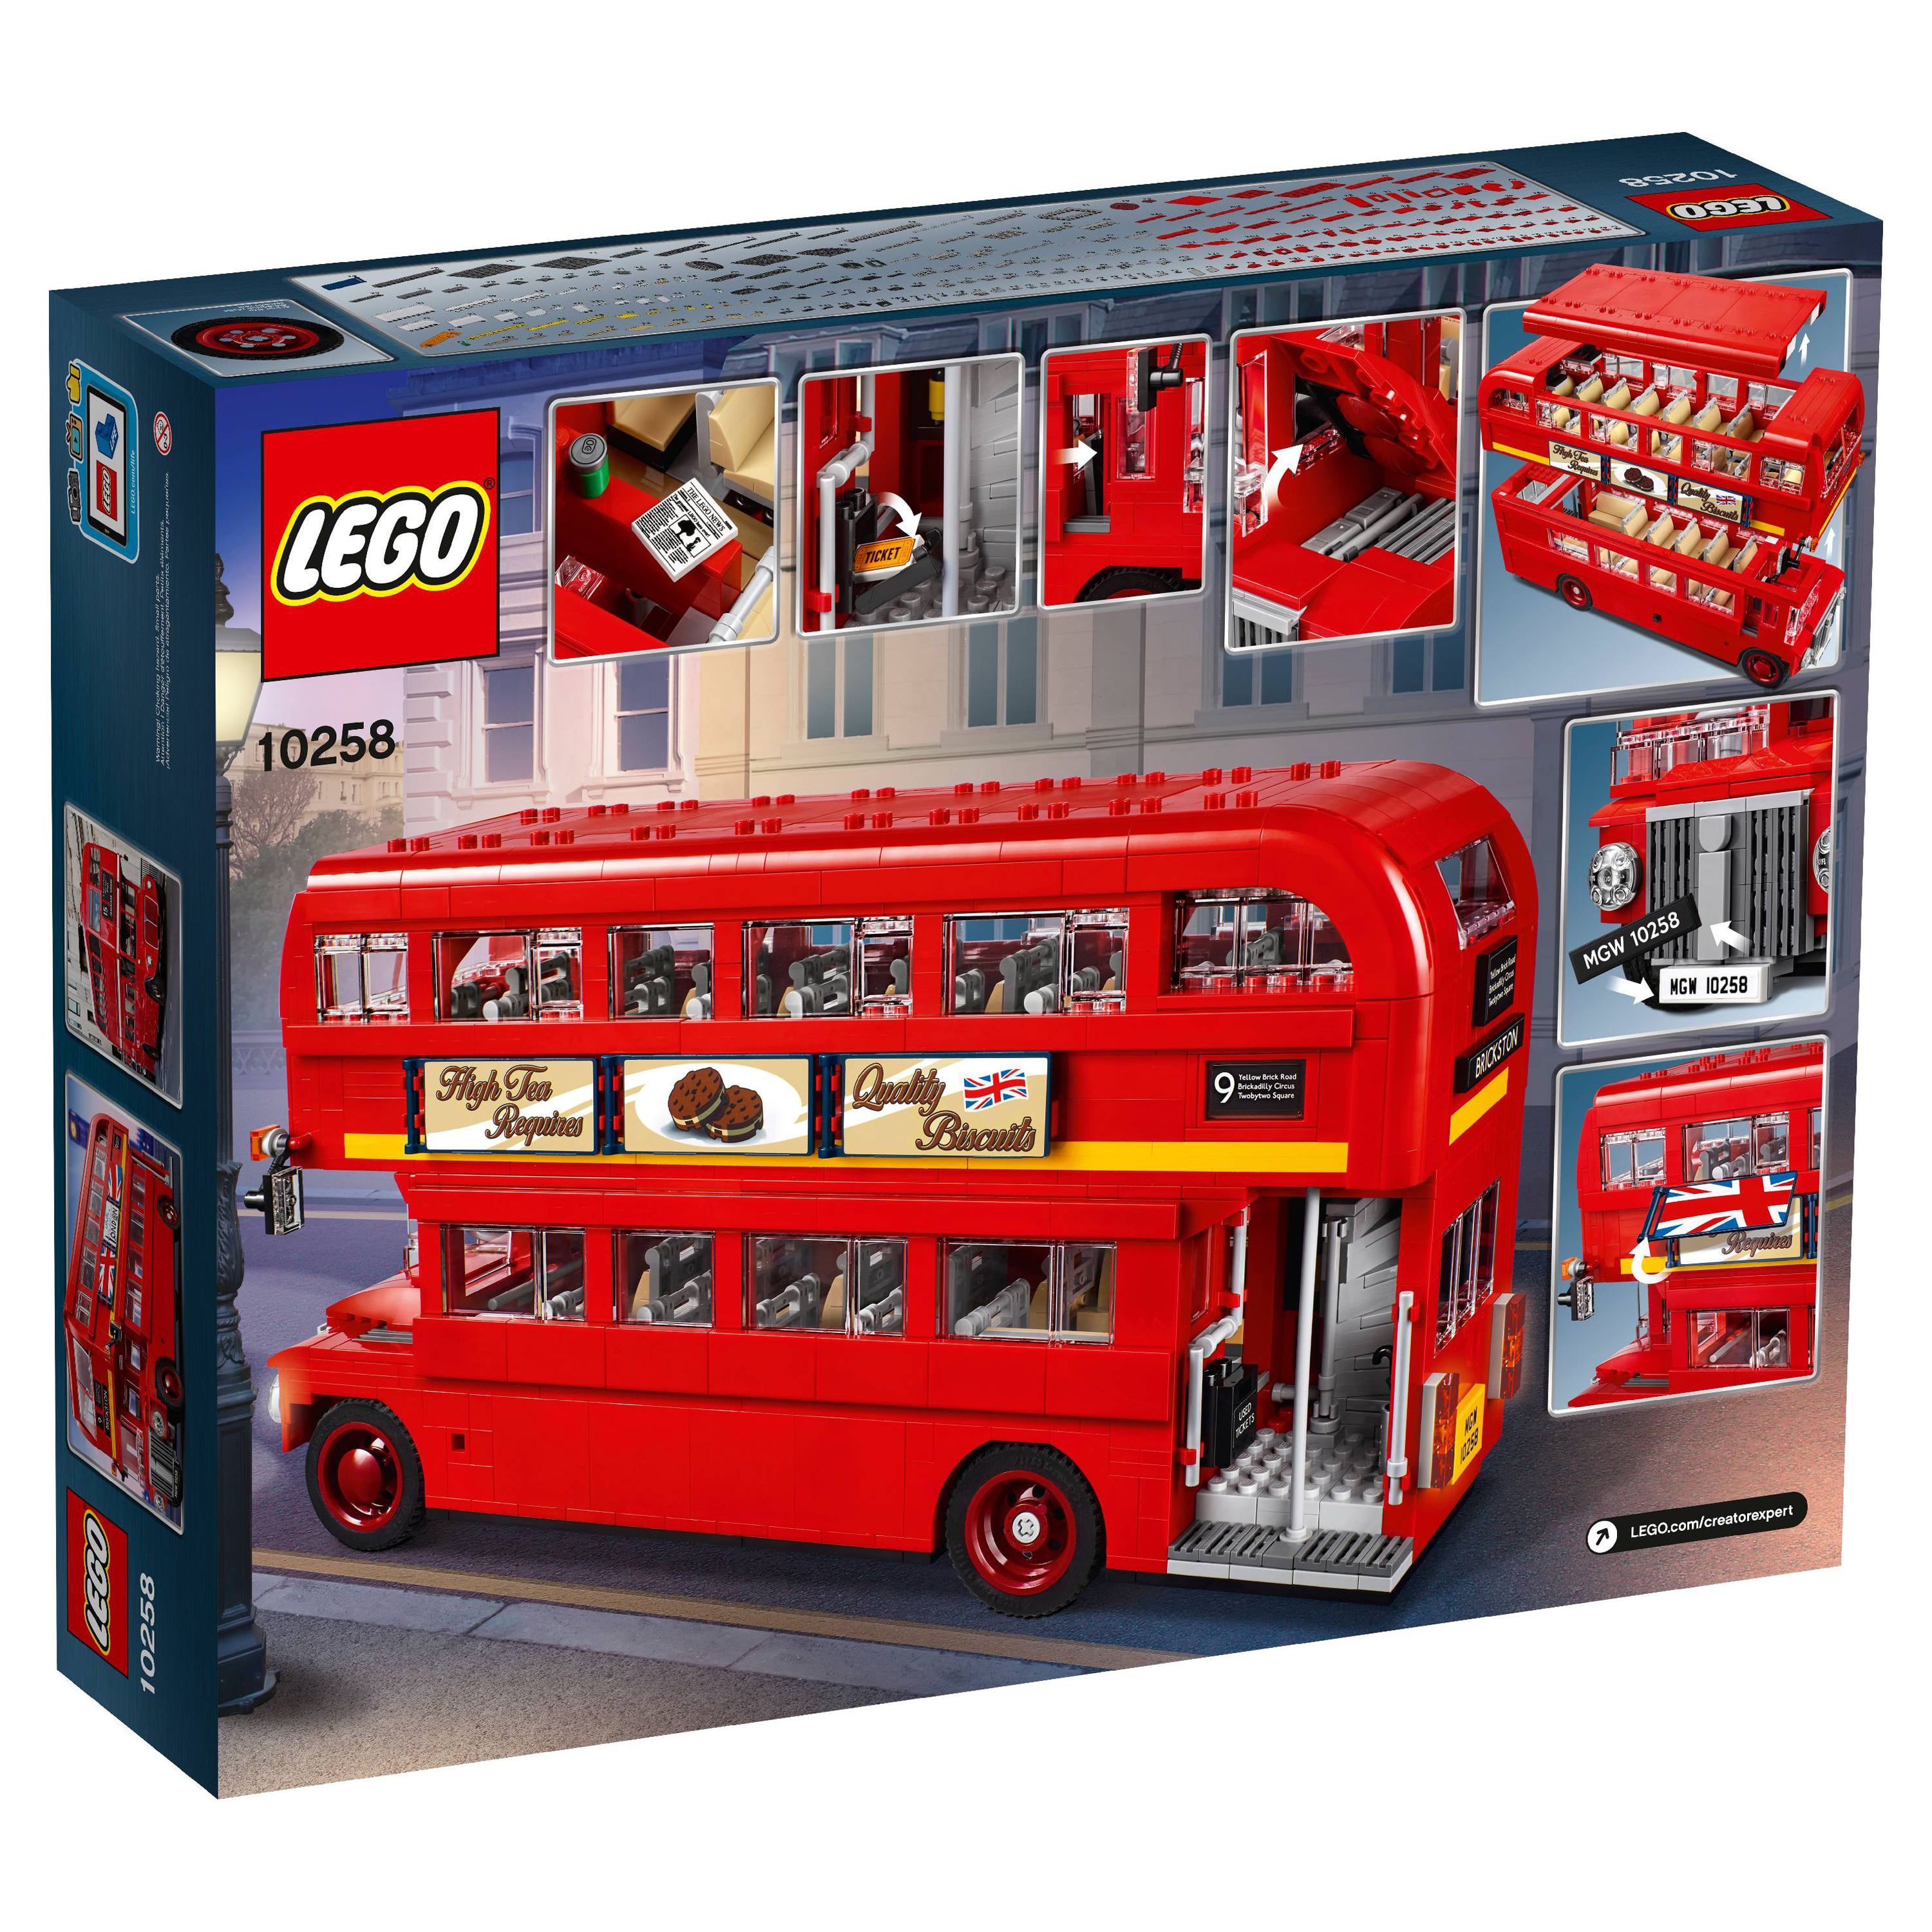 LEGO London Bus 10258 Building Set (1686 Pieces) - image 5 of 7